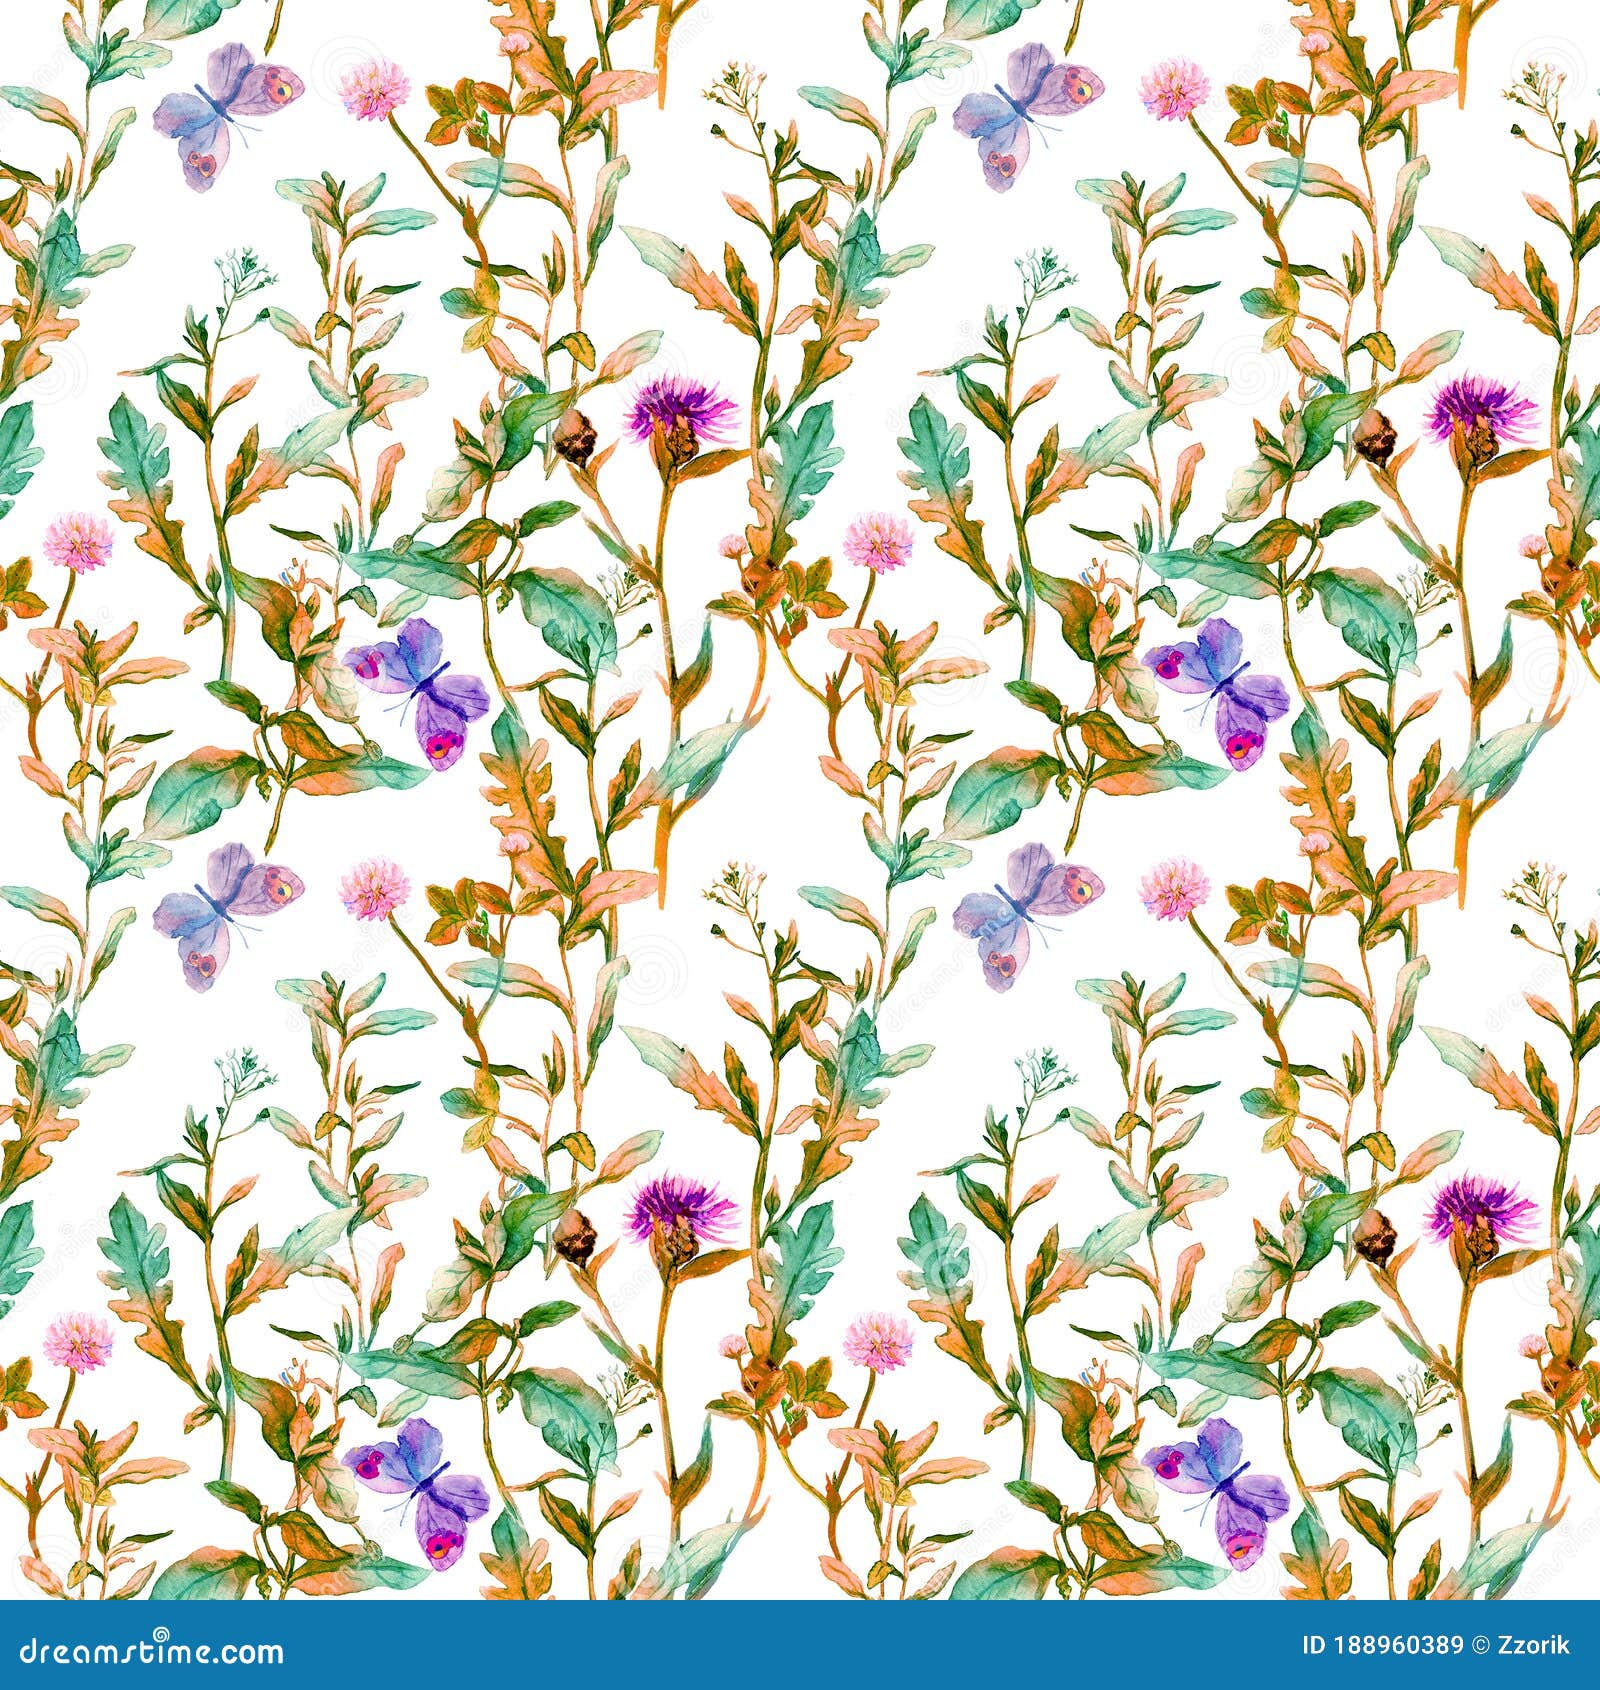 autumn meadow, prairie. floral sprigs, flowers. vintage seamless spacial pattern. watercolor